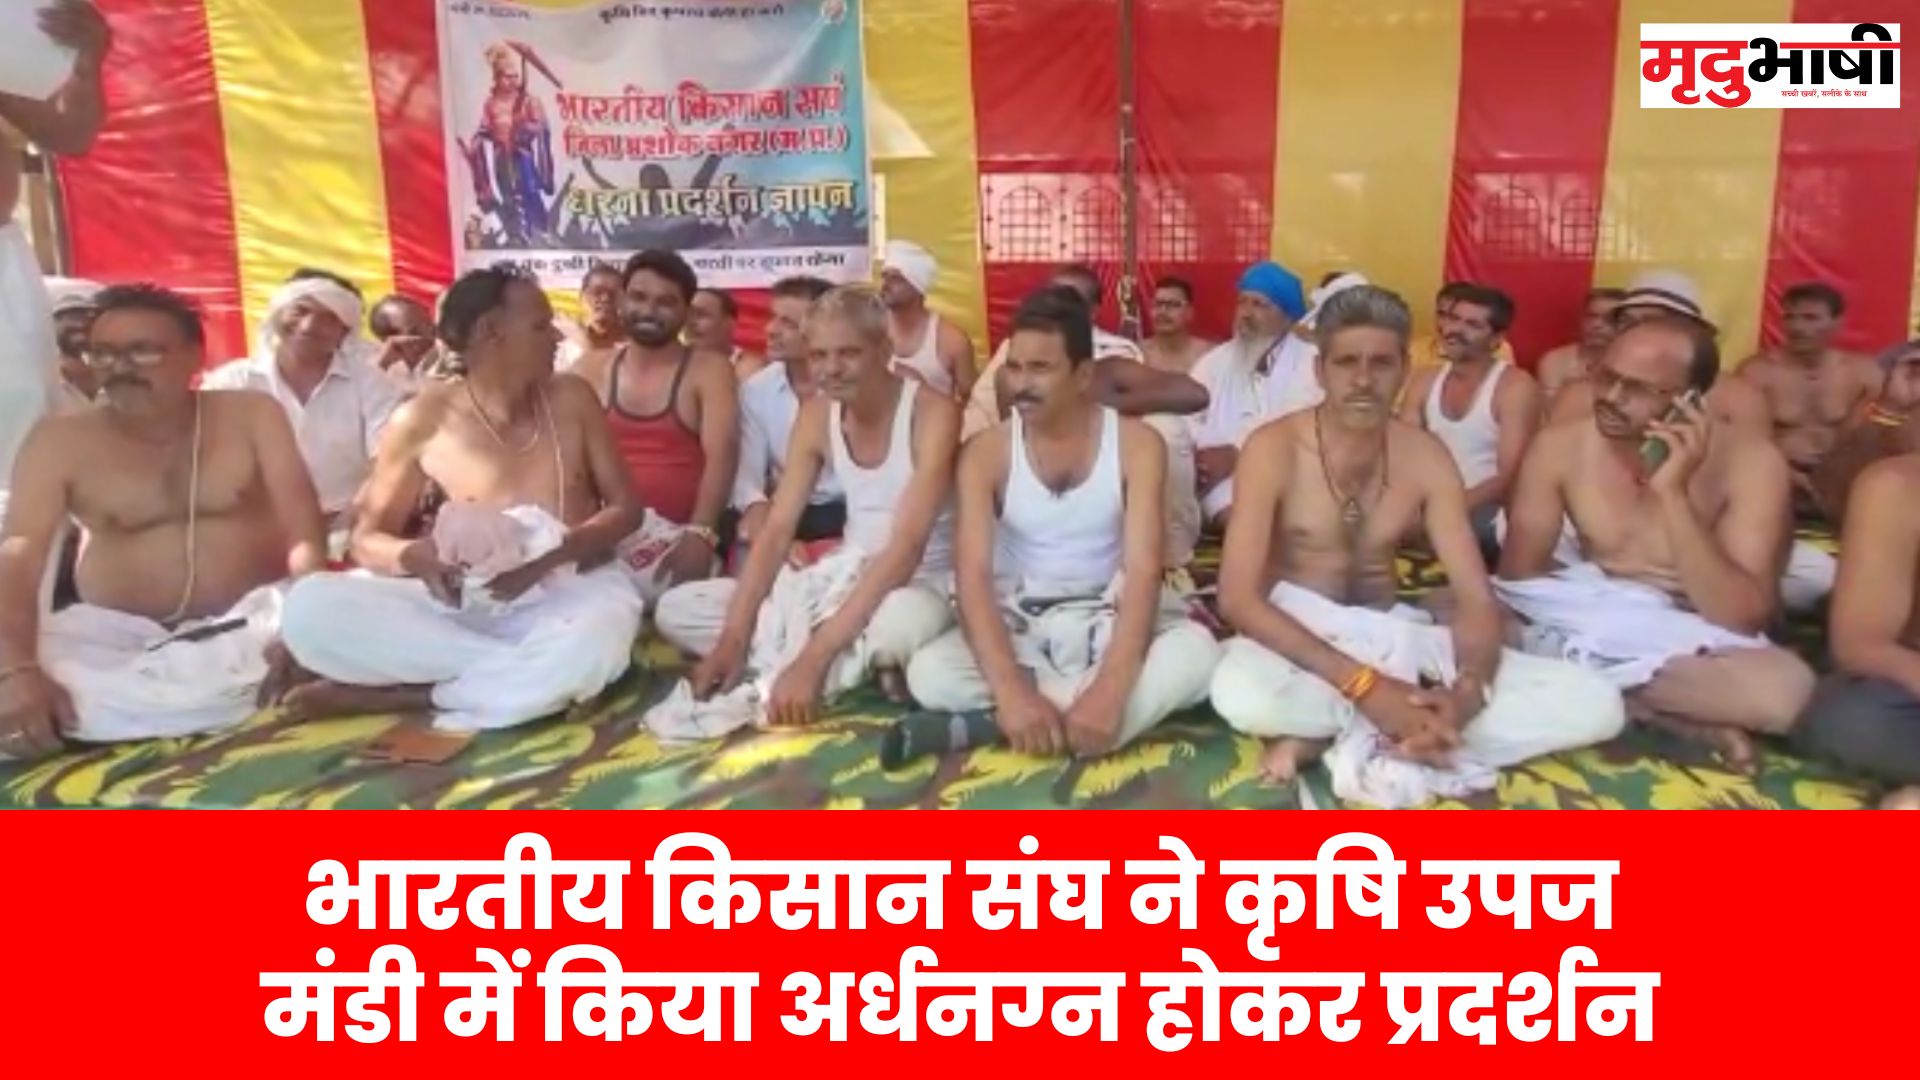 भारतीय किसान संघ ने कृषि उपज मंडी में किया अर्धनग्न होकर प्रदर्शन